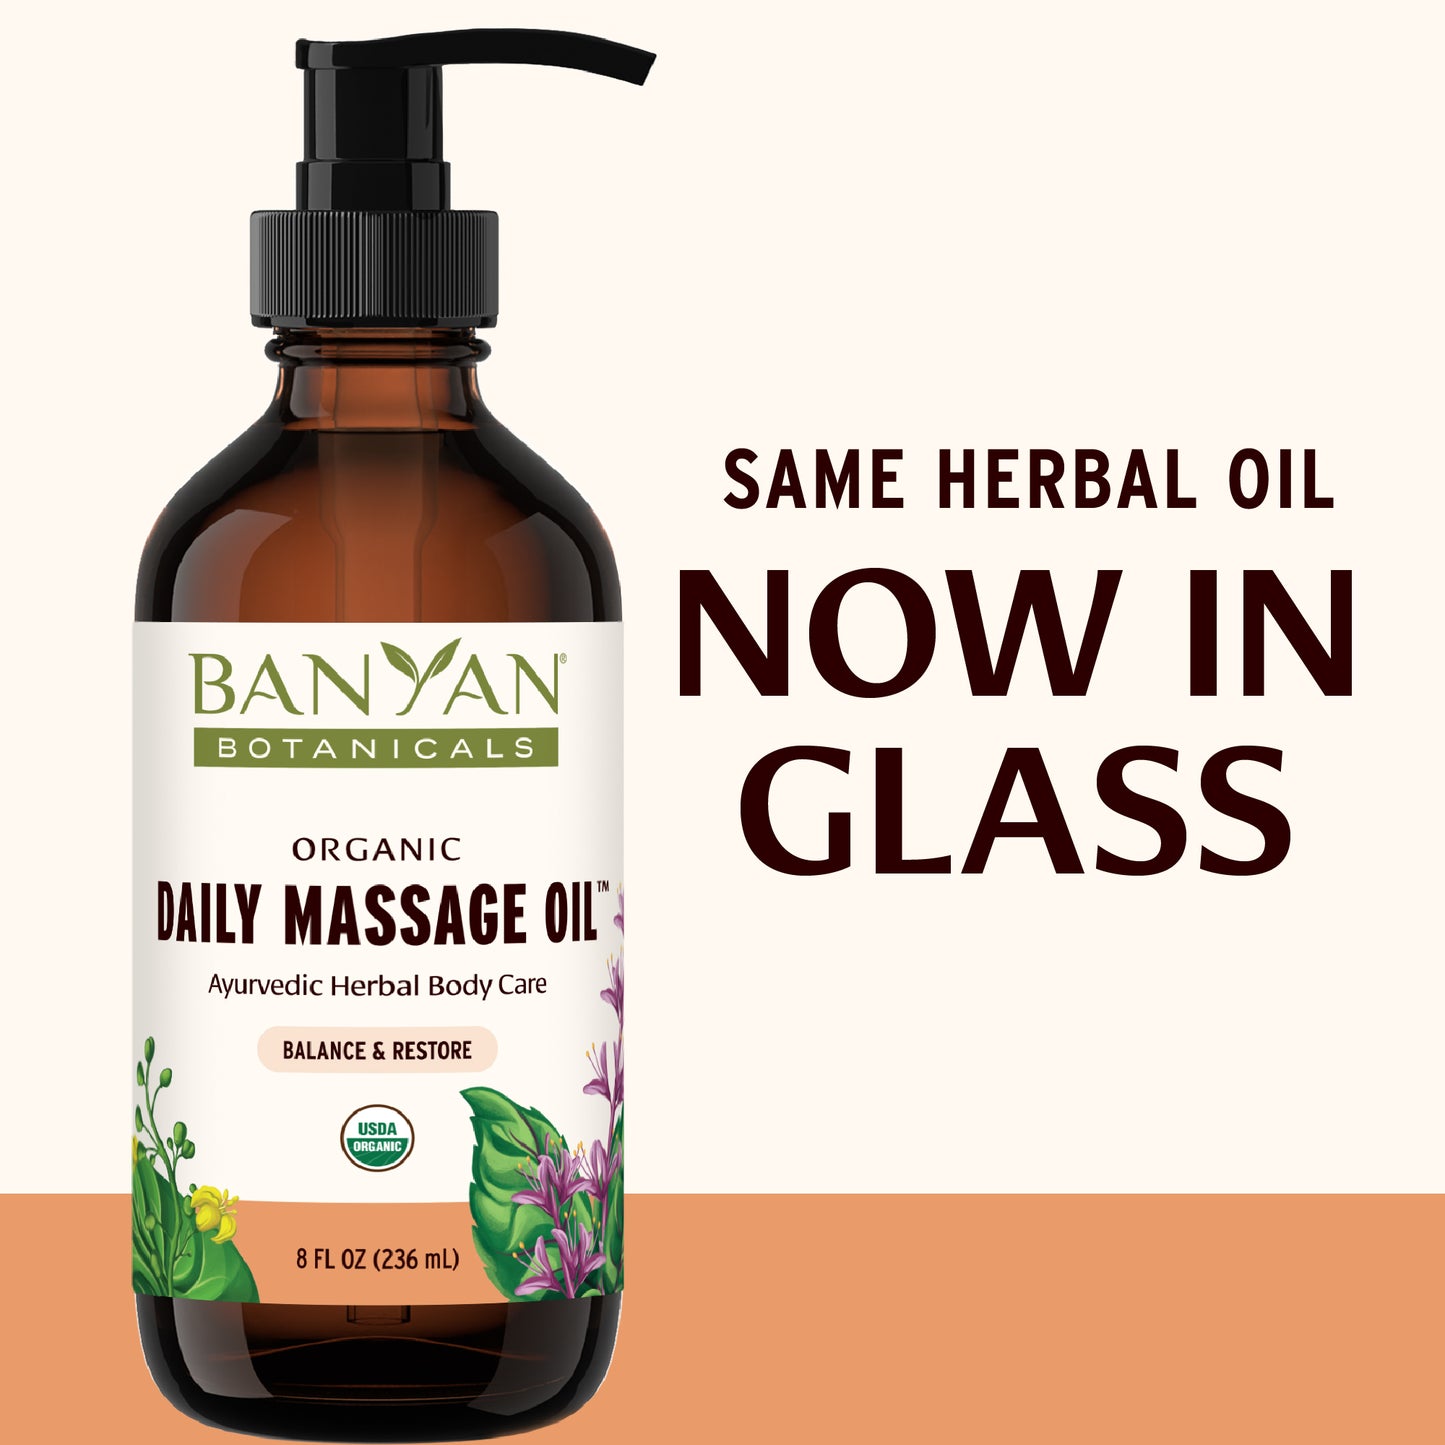 8 fl oz: Daily Massage Oil rebrand